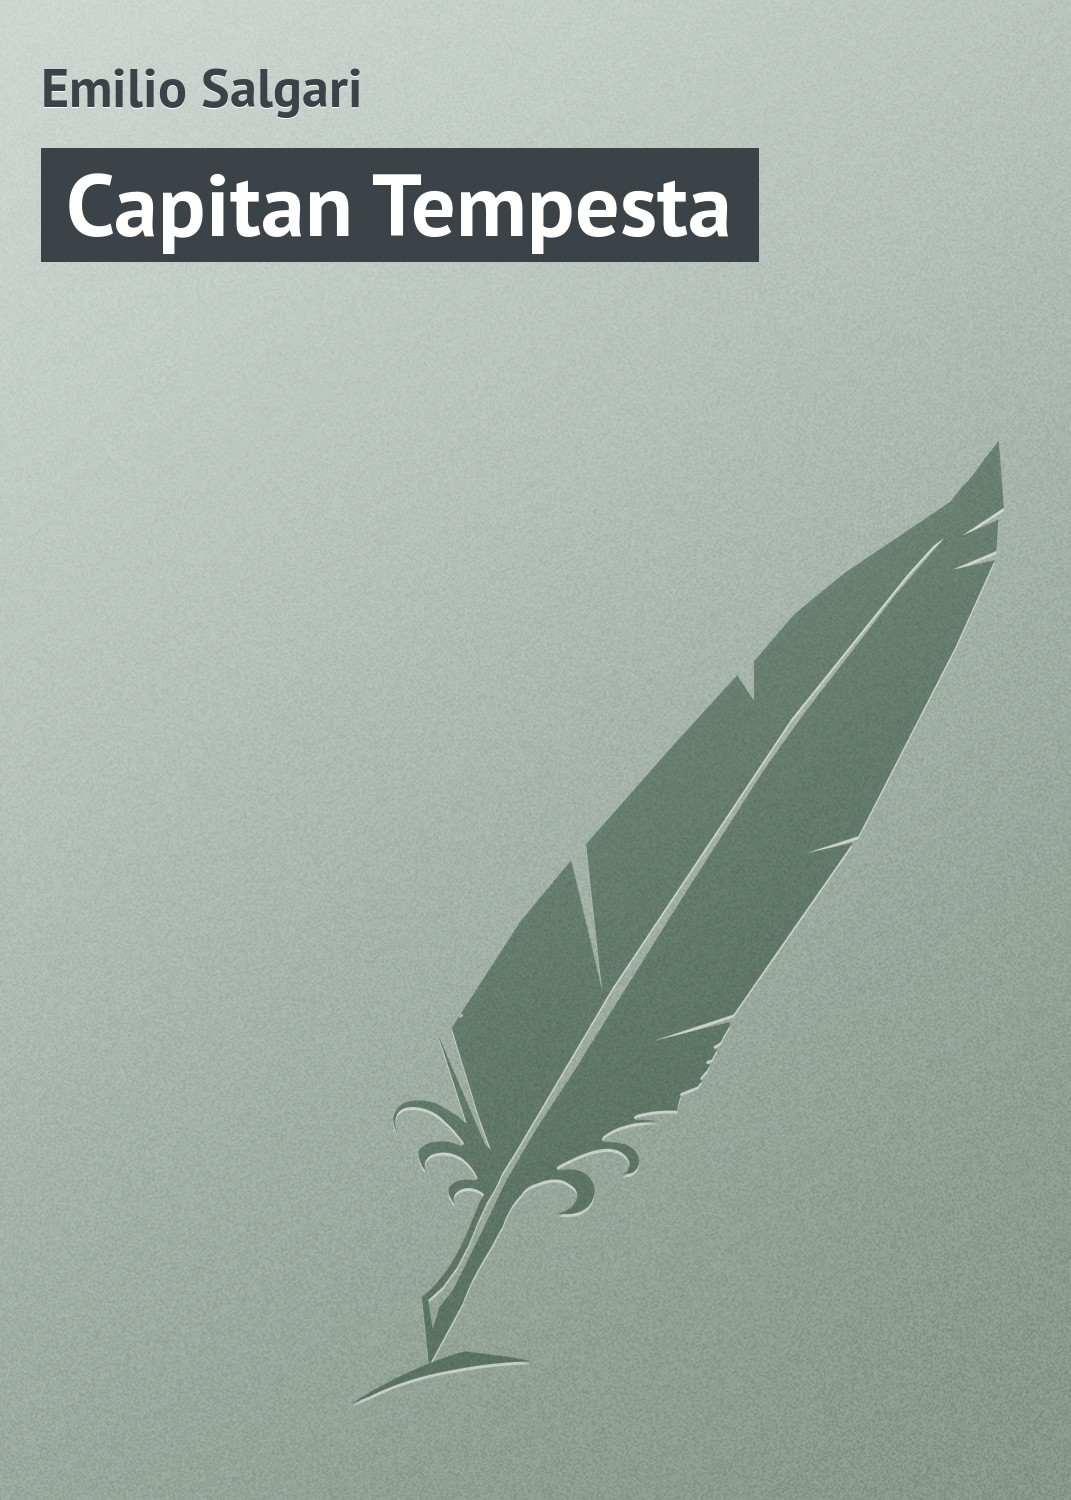 Книга Capitan Tempesta из серии , созданная Emilio Salgari, может относится к жанру Зарубежная старинная литература, Зарубежная классика. Стоимость электронной книги Capitan Tempesta с идентификатором 21103958 составляет 5.99 руб.